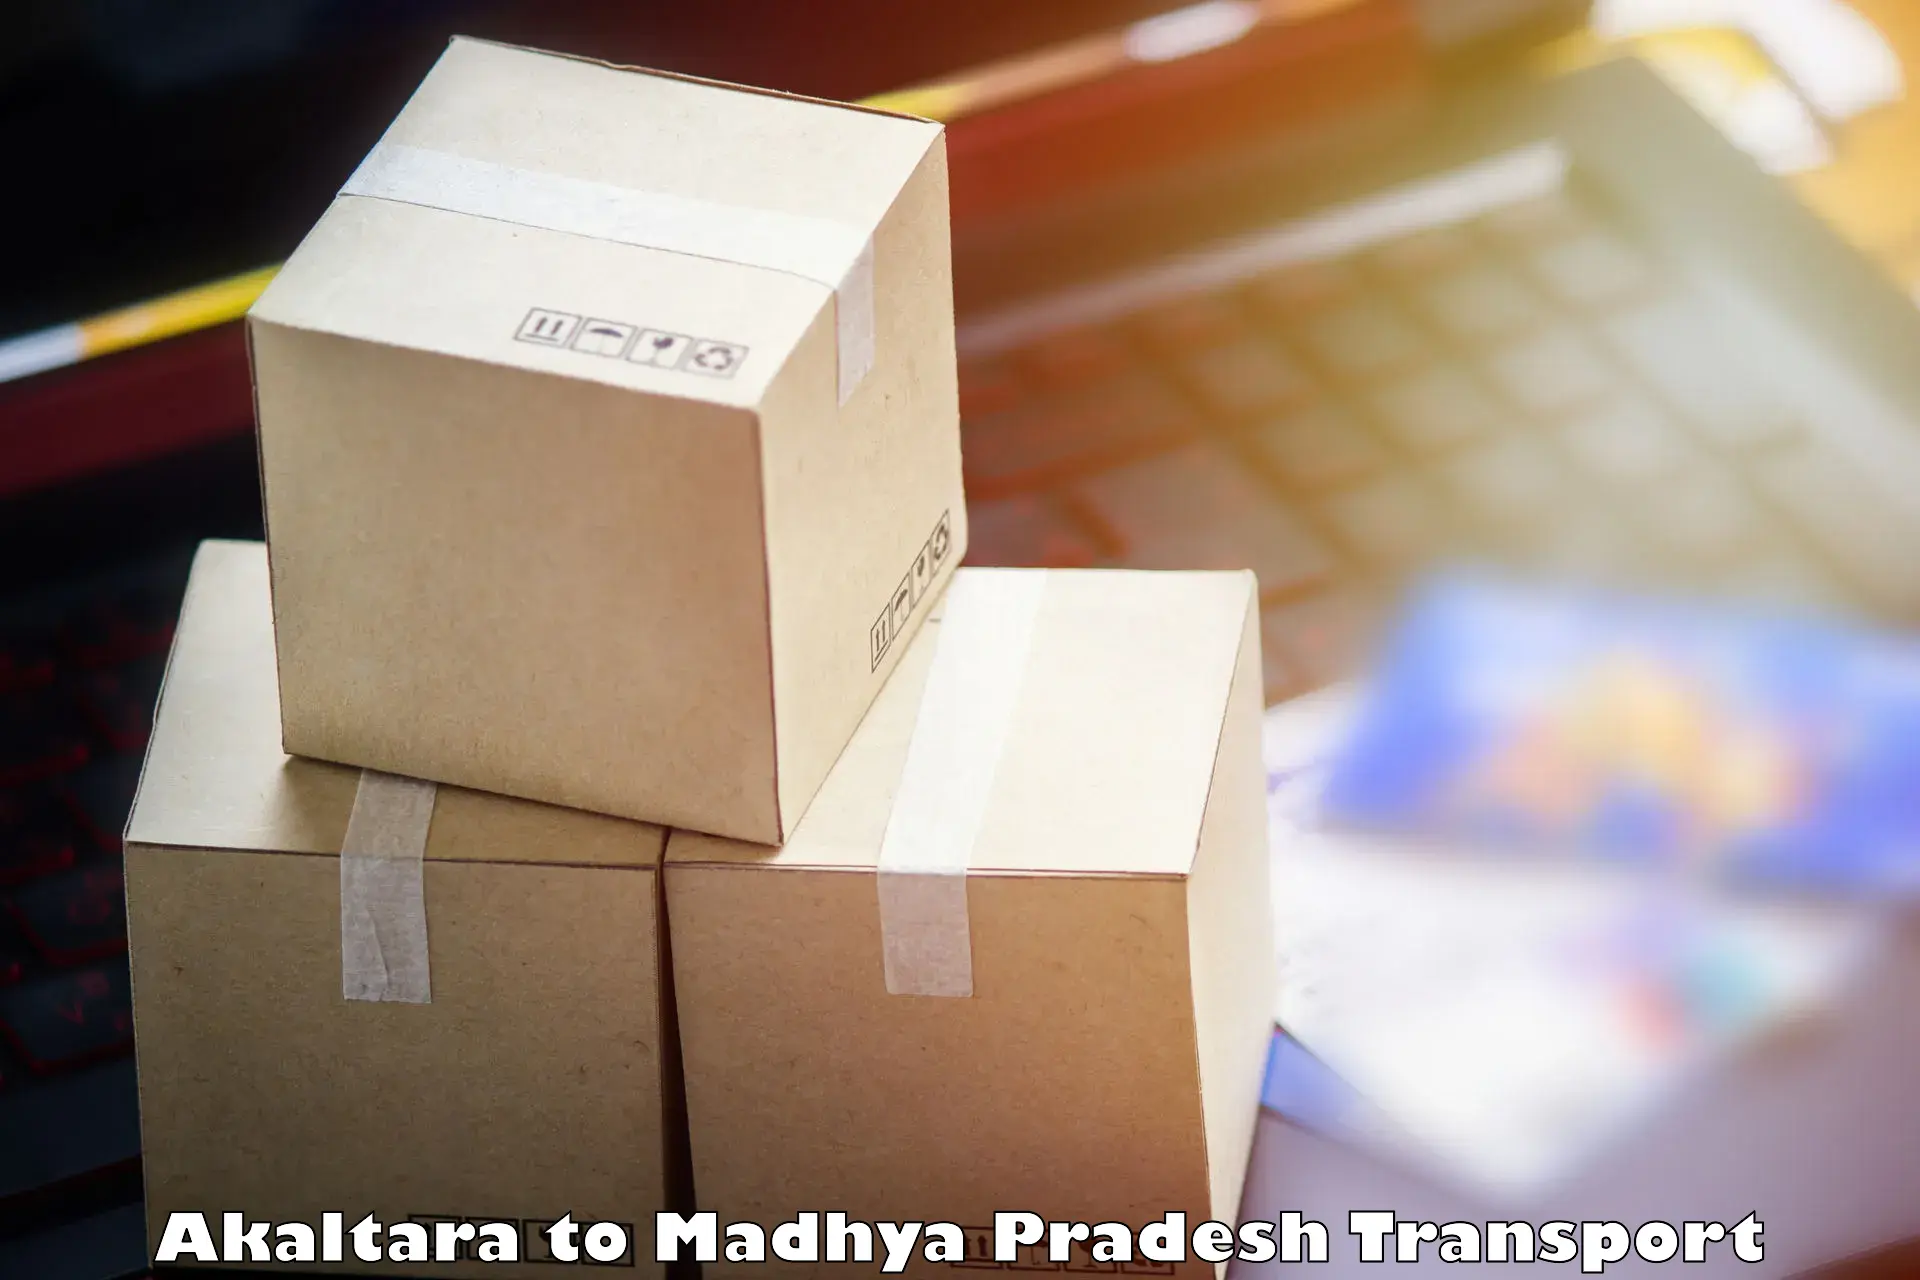 Online transport service Akaltara to Madhya Pradesh